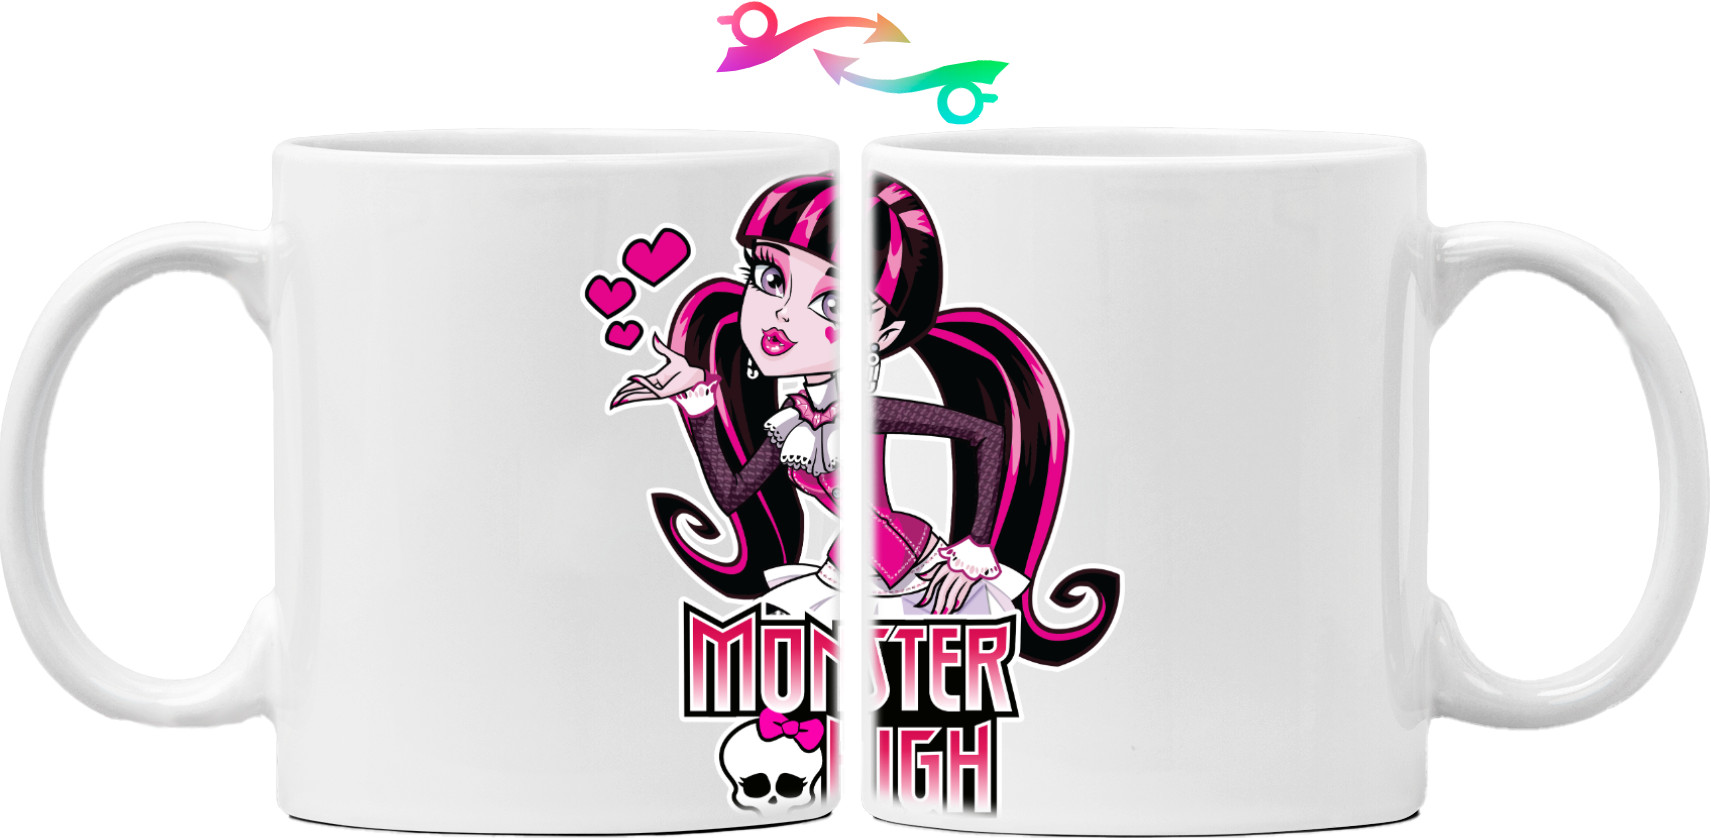 Monster High (2)